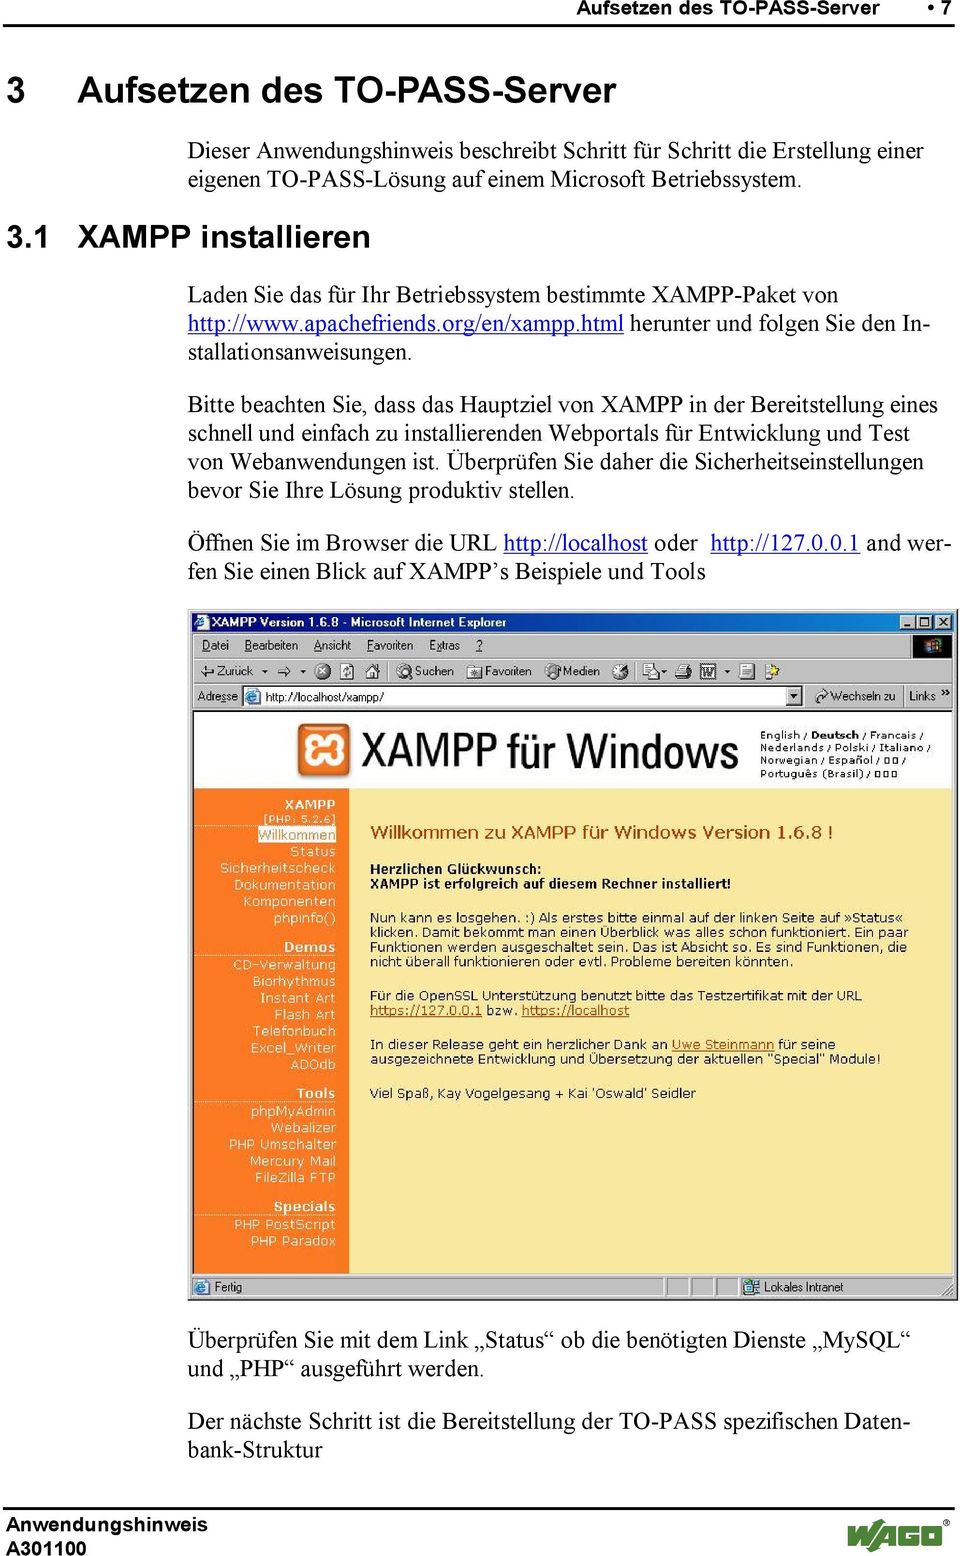 Bitte beachten Sie, dass das Hauptziel von XAMPP in der Bereitstellung eines schnell und einfach zu installierenden Webportals für Entwicklung und Test von Webanwendungen ist.